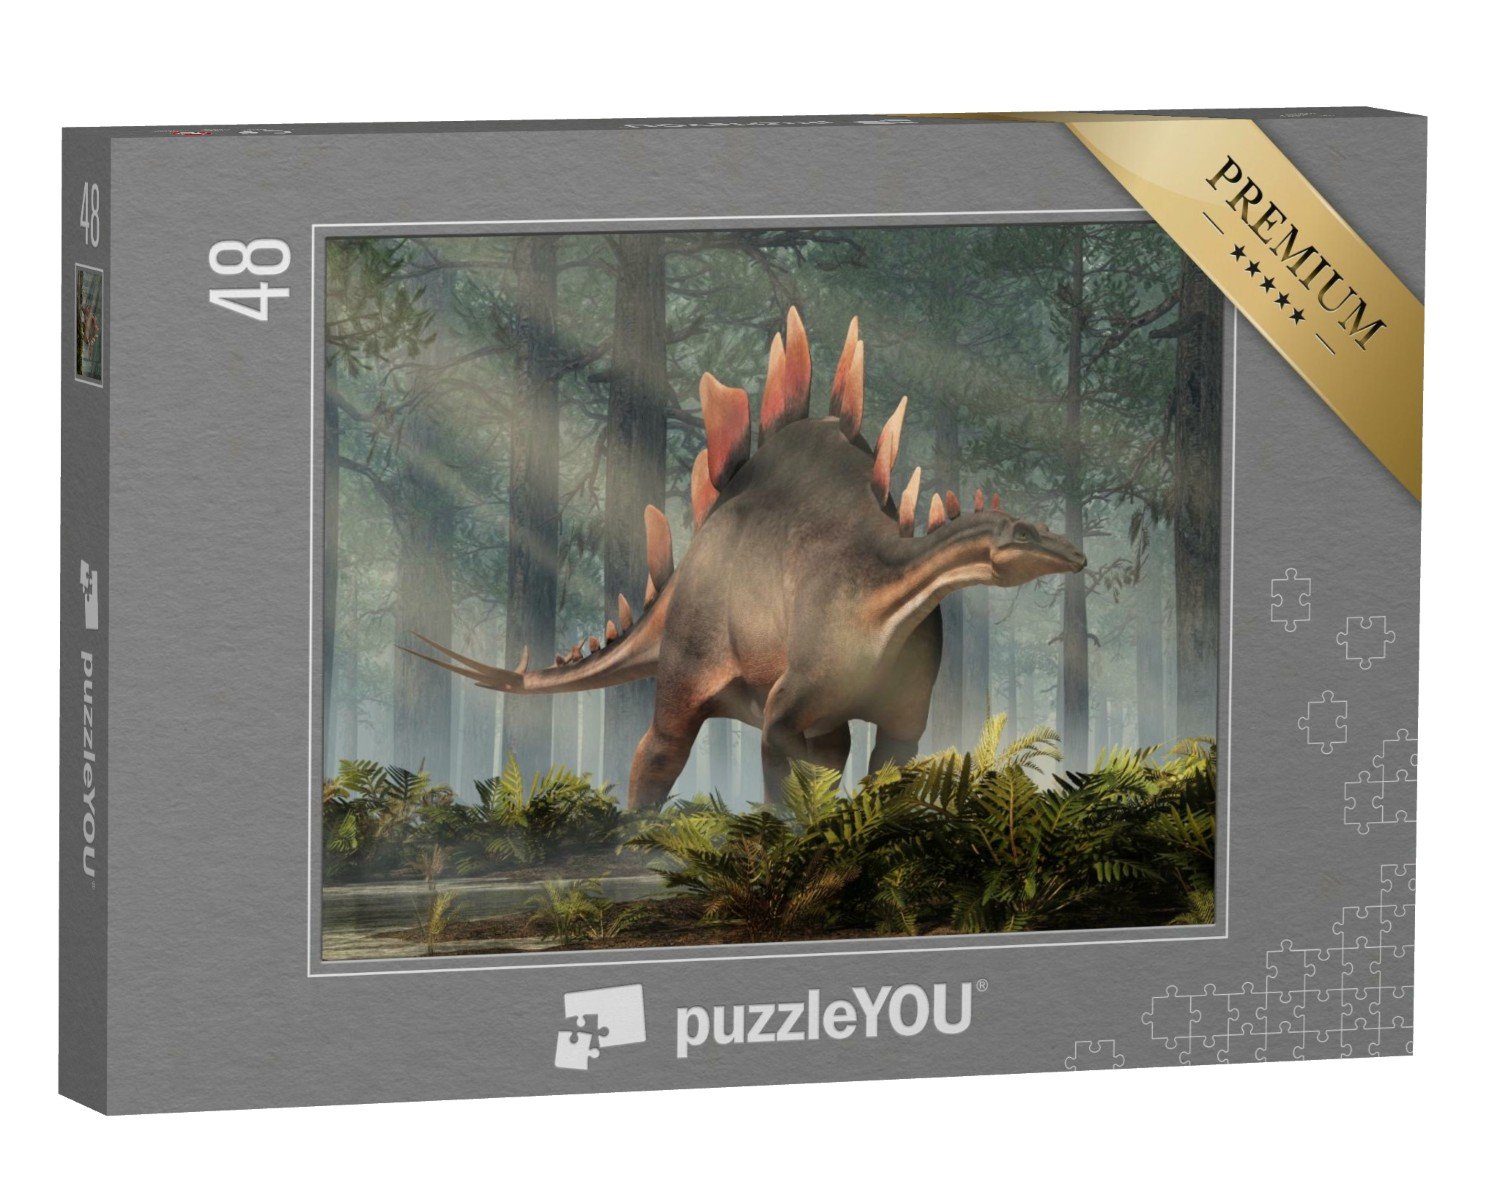 & ein Urzeit Puzzleteile, Tiere puzzleYOU-Kollektionen Stegosaurus, Dinosaurier, 3D-Illustration, Pflanzenfresser, 48 aus Fantasy Puzzle puzzleYOU